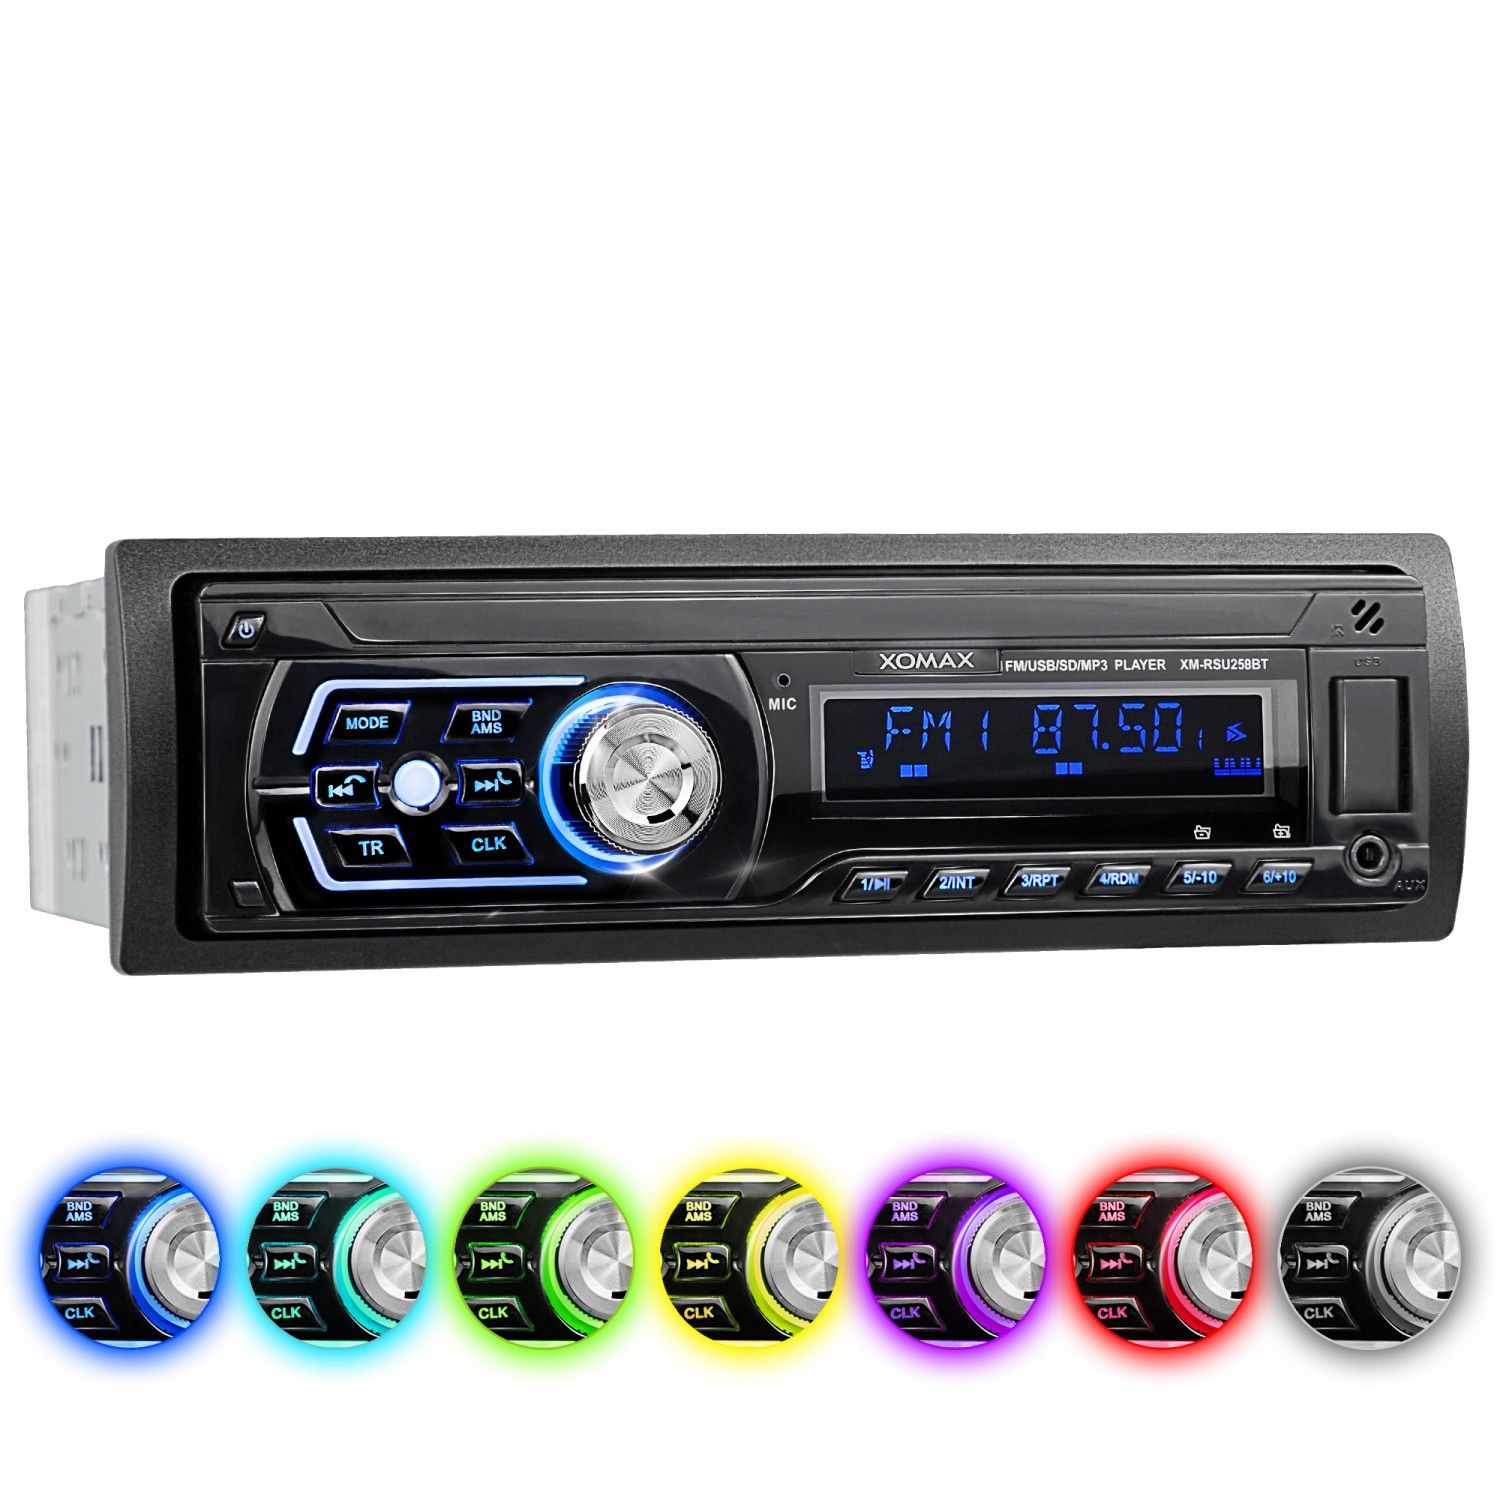 AUTORADIO BLUETOOTH FREISPRECH-EINRICHTUNG 7 FARBEN USB SD AUX MP3 1DIN OHNE CD